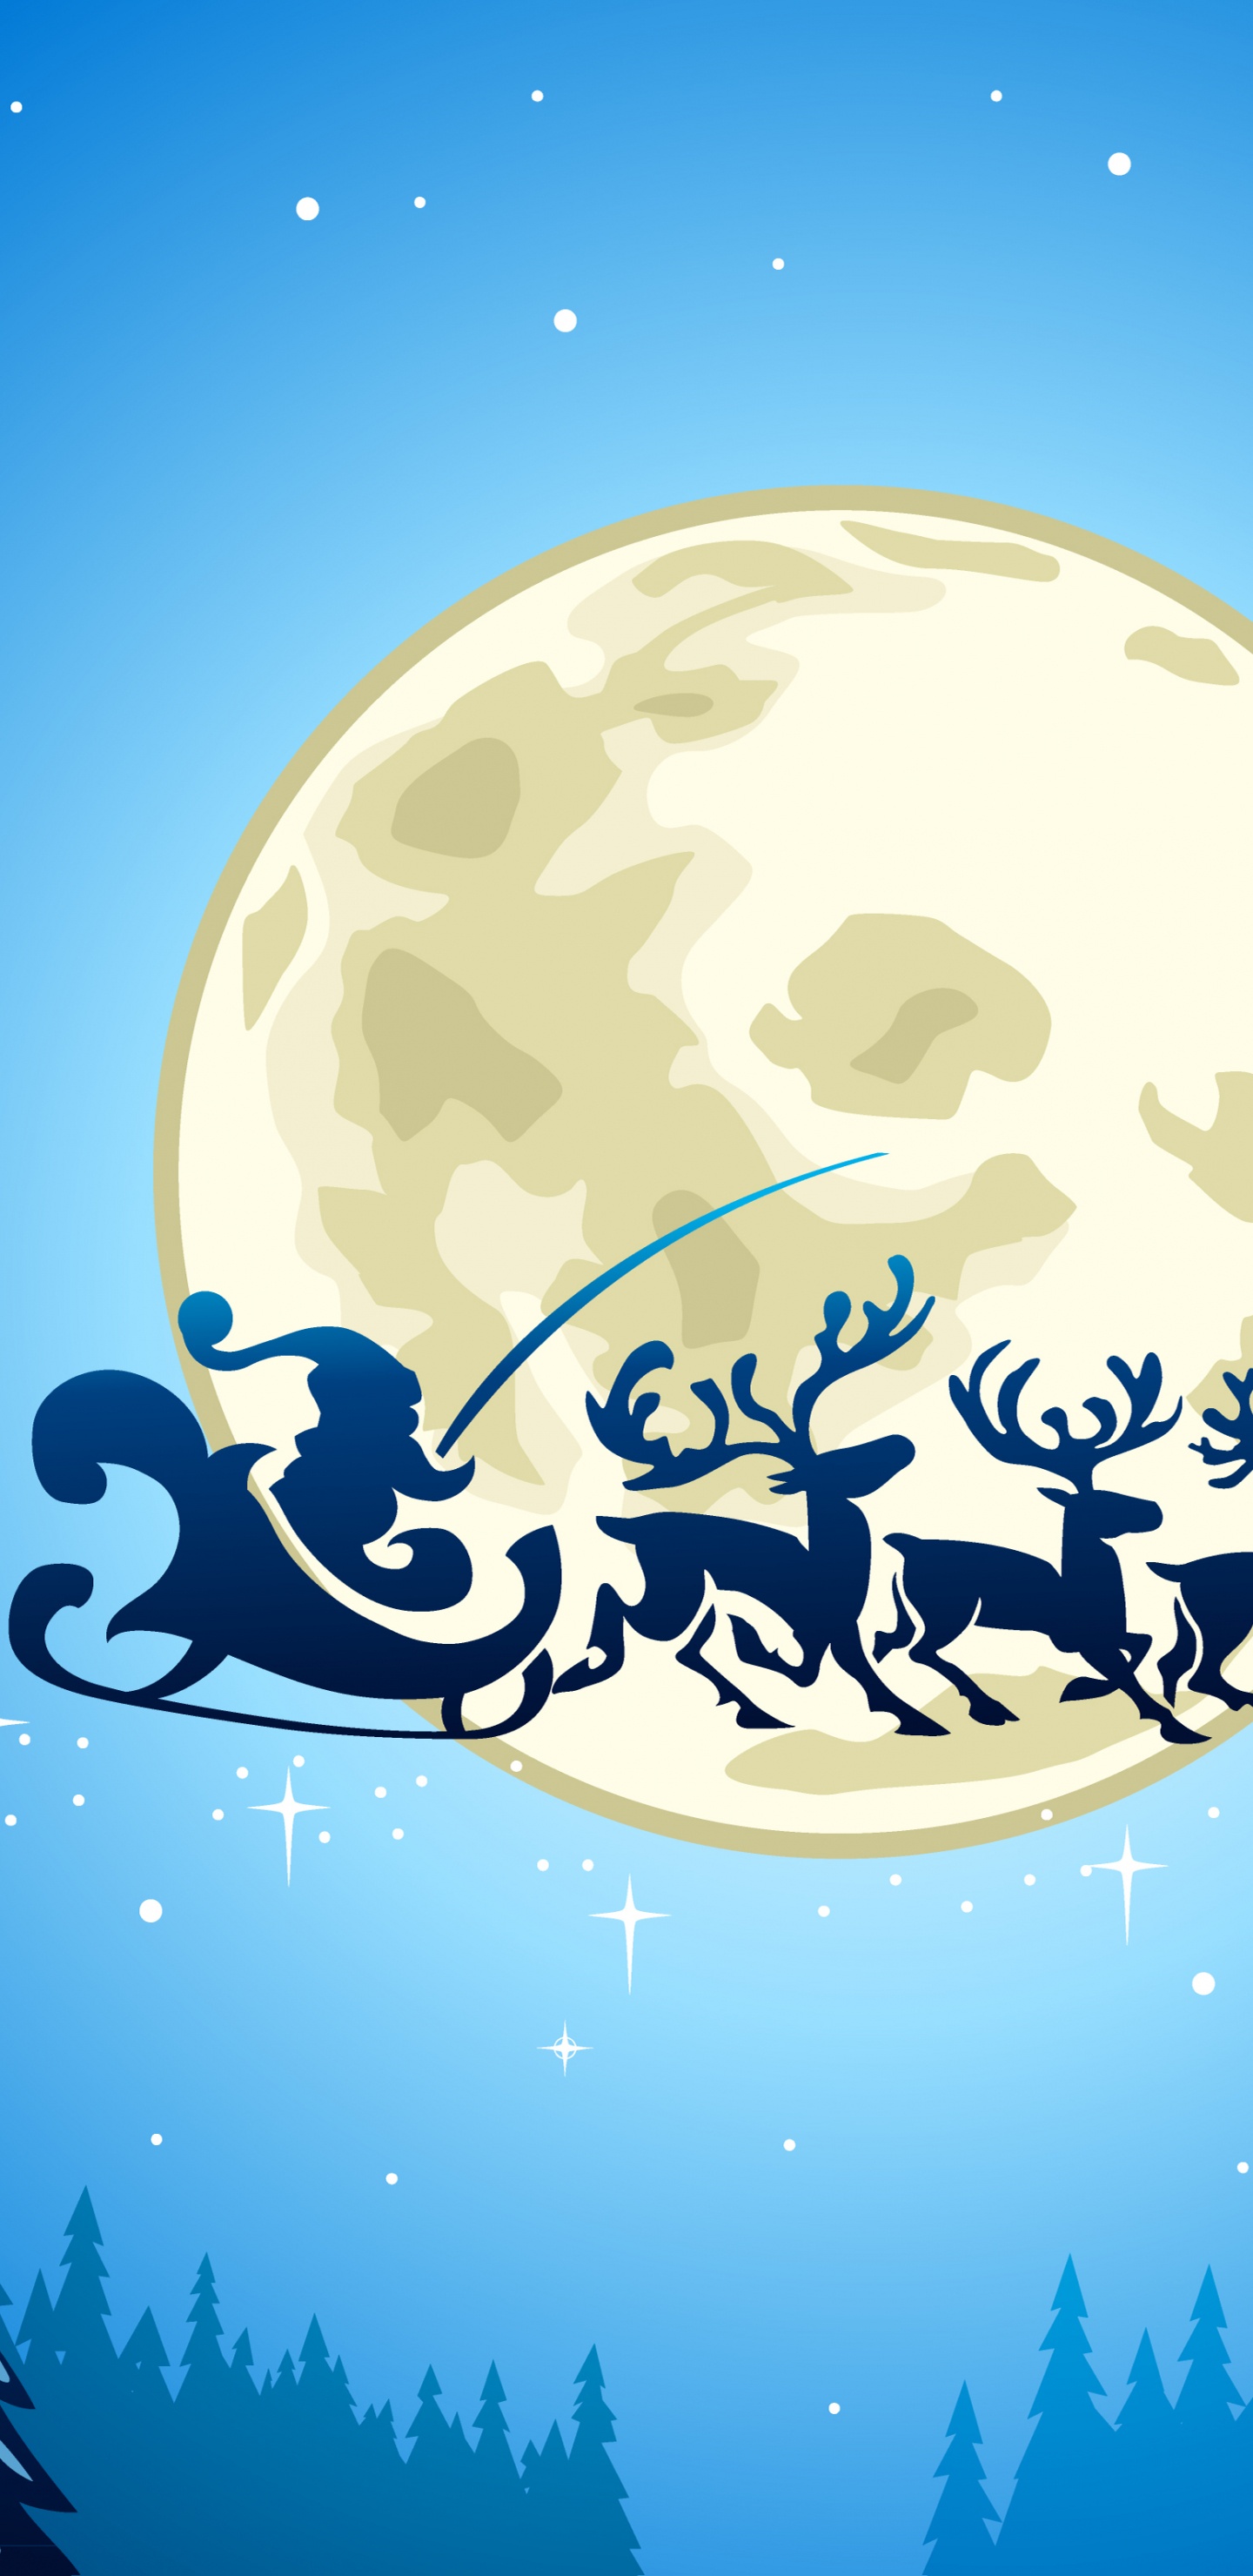 Weihnachten, Weihnachtsmann, Illustration, Mond, Ded Moroz. Wallpaper in 1440x2960 Resolution